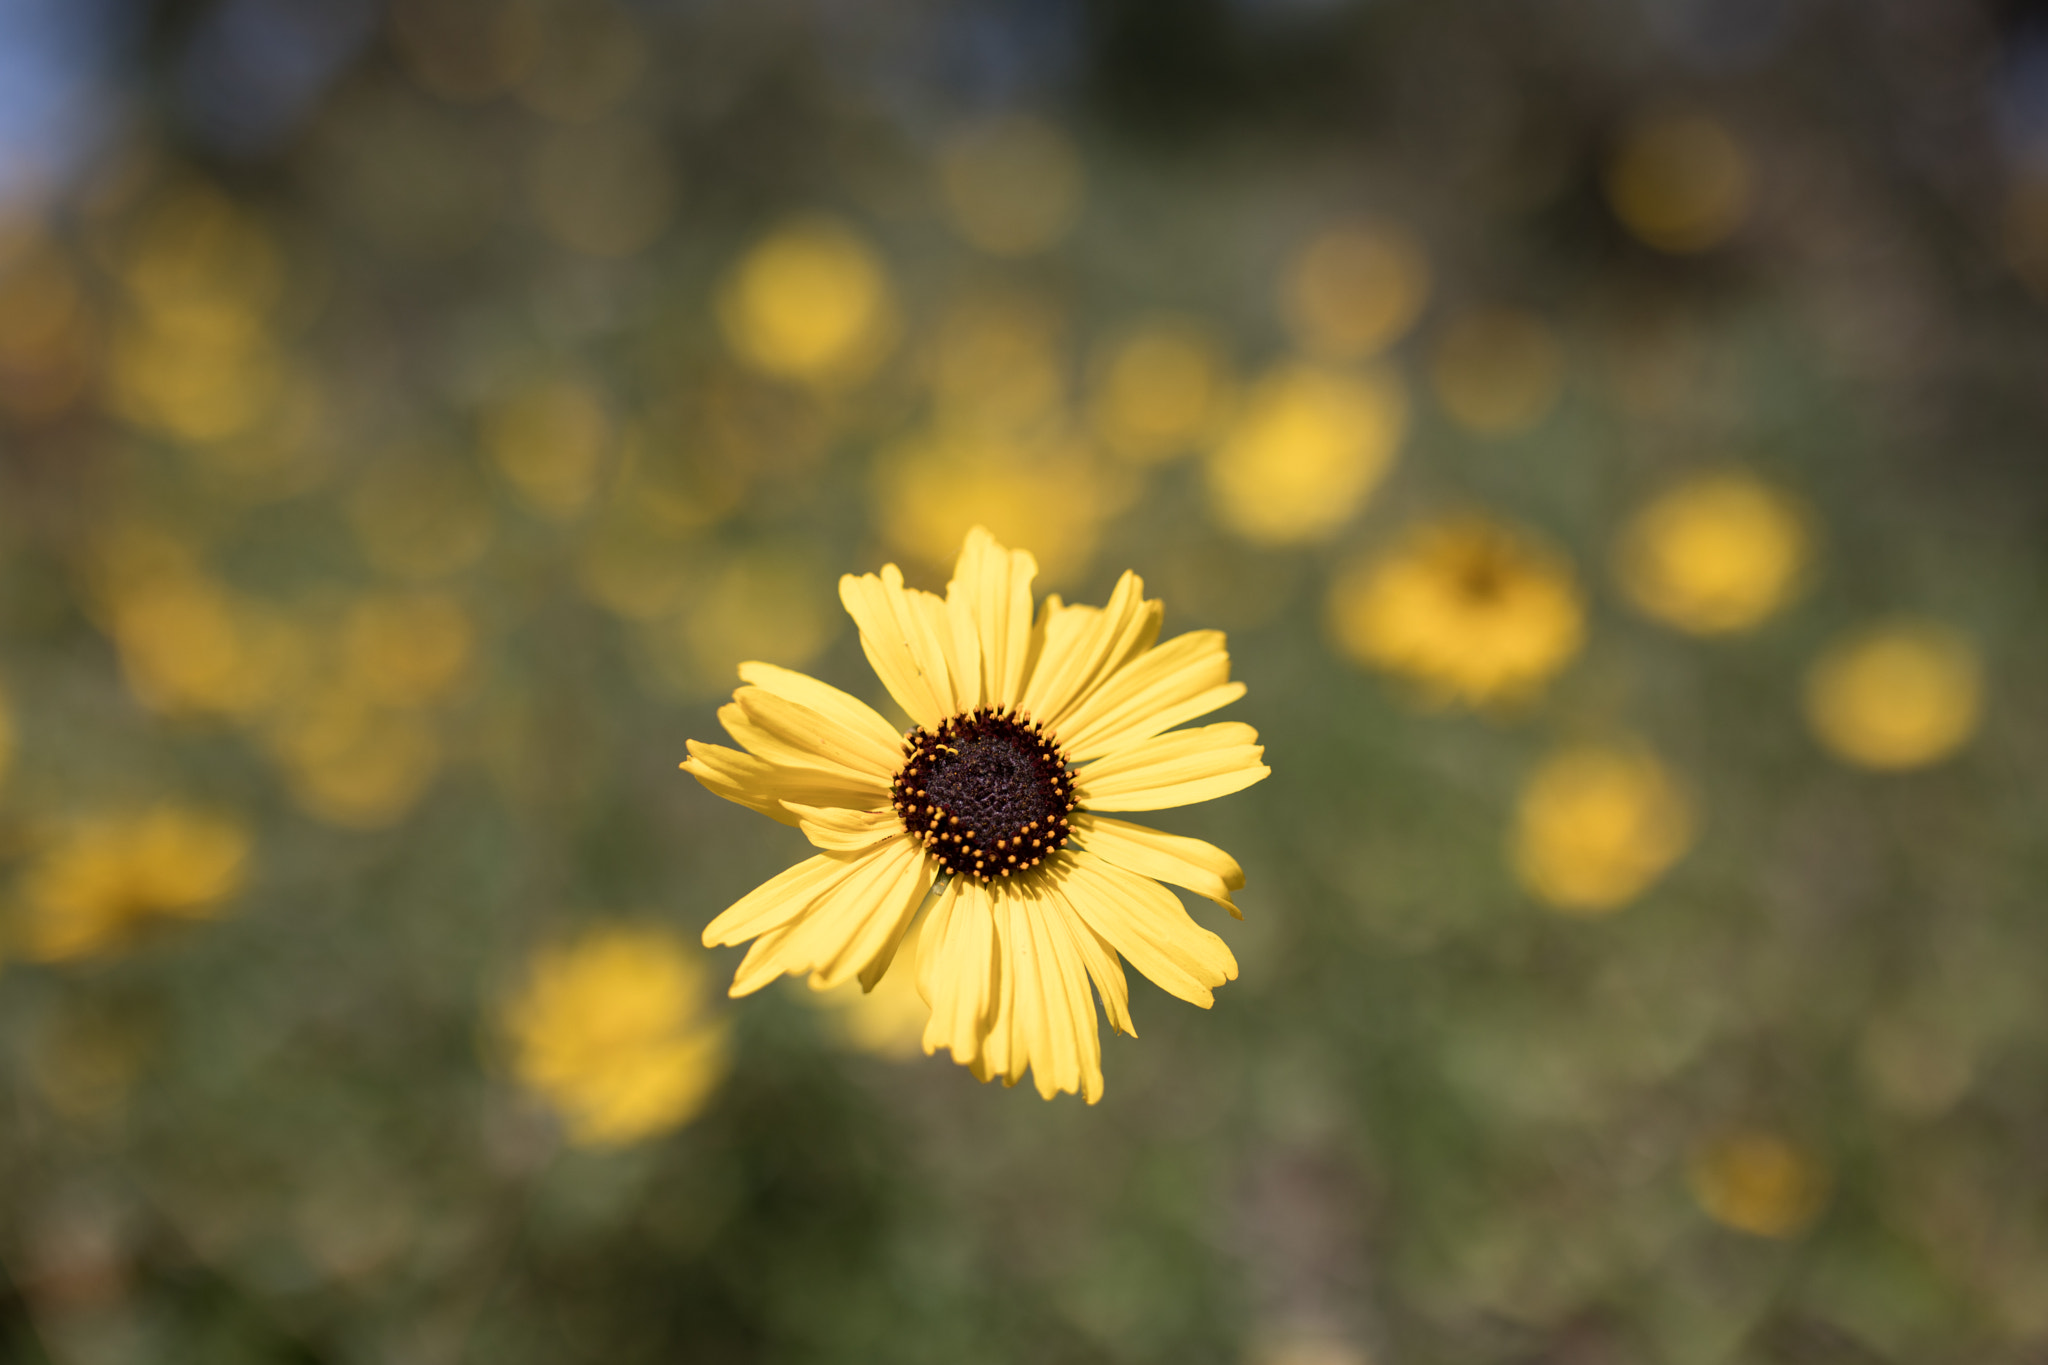 Canon EOS 5D Mark IV sample photo. California sunflower photography